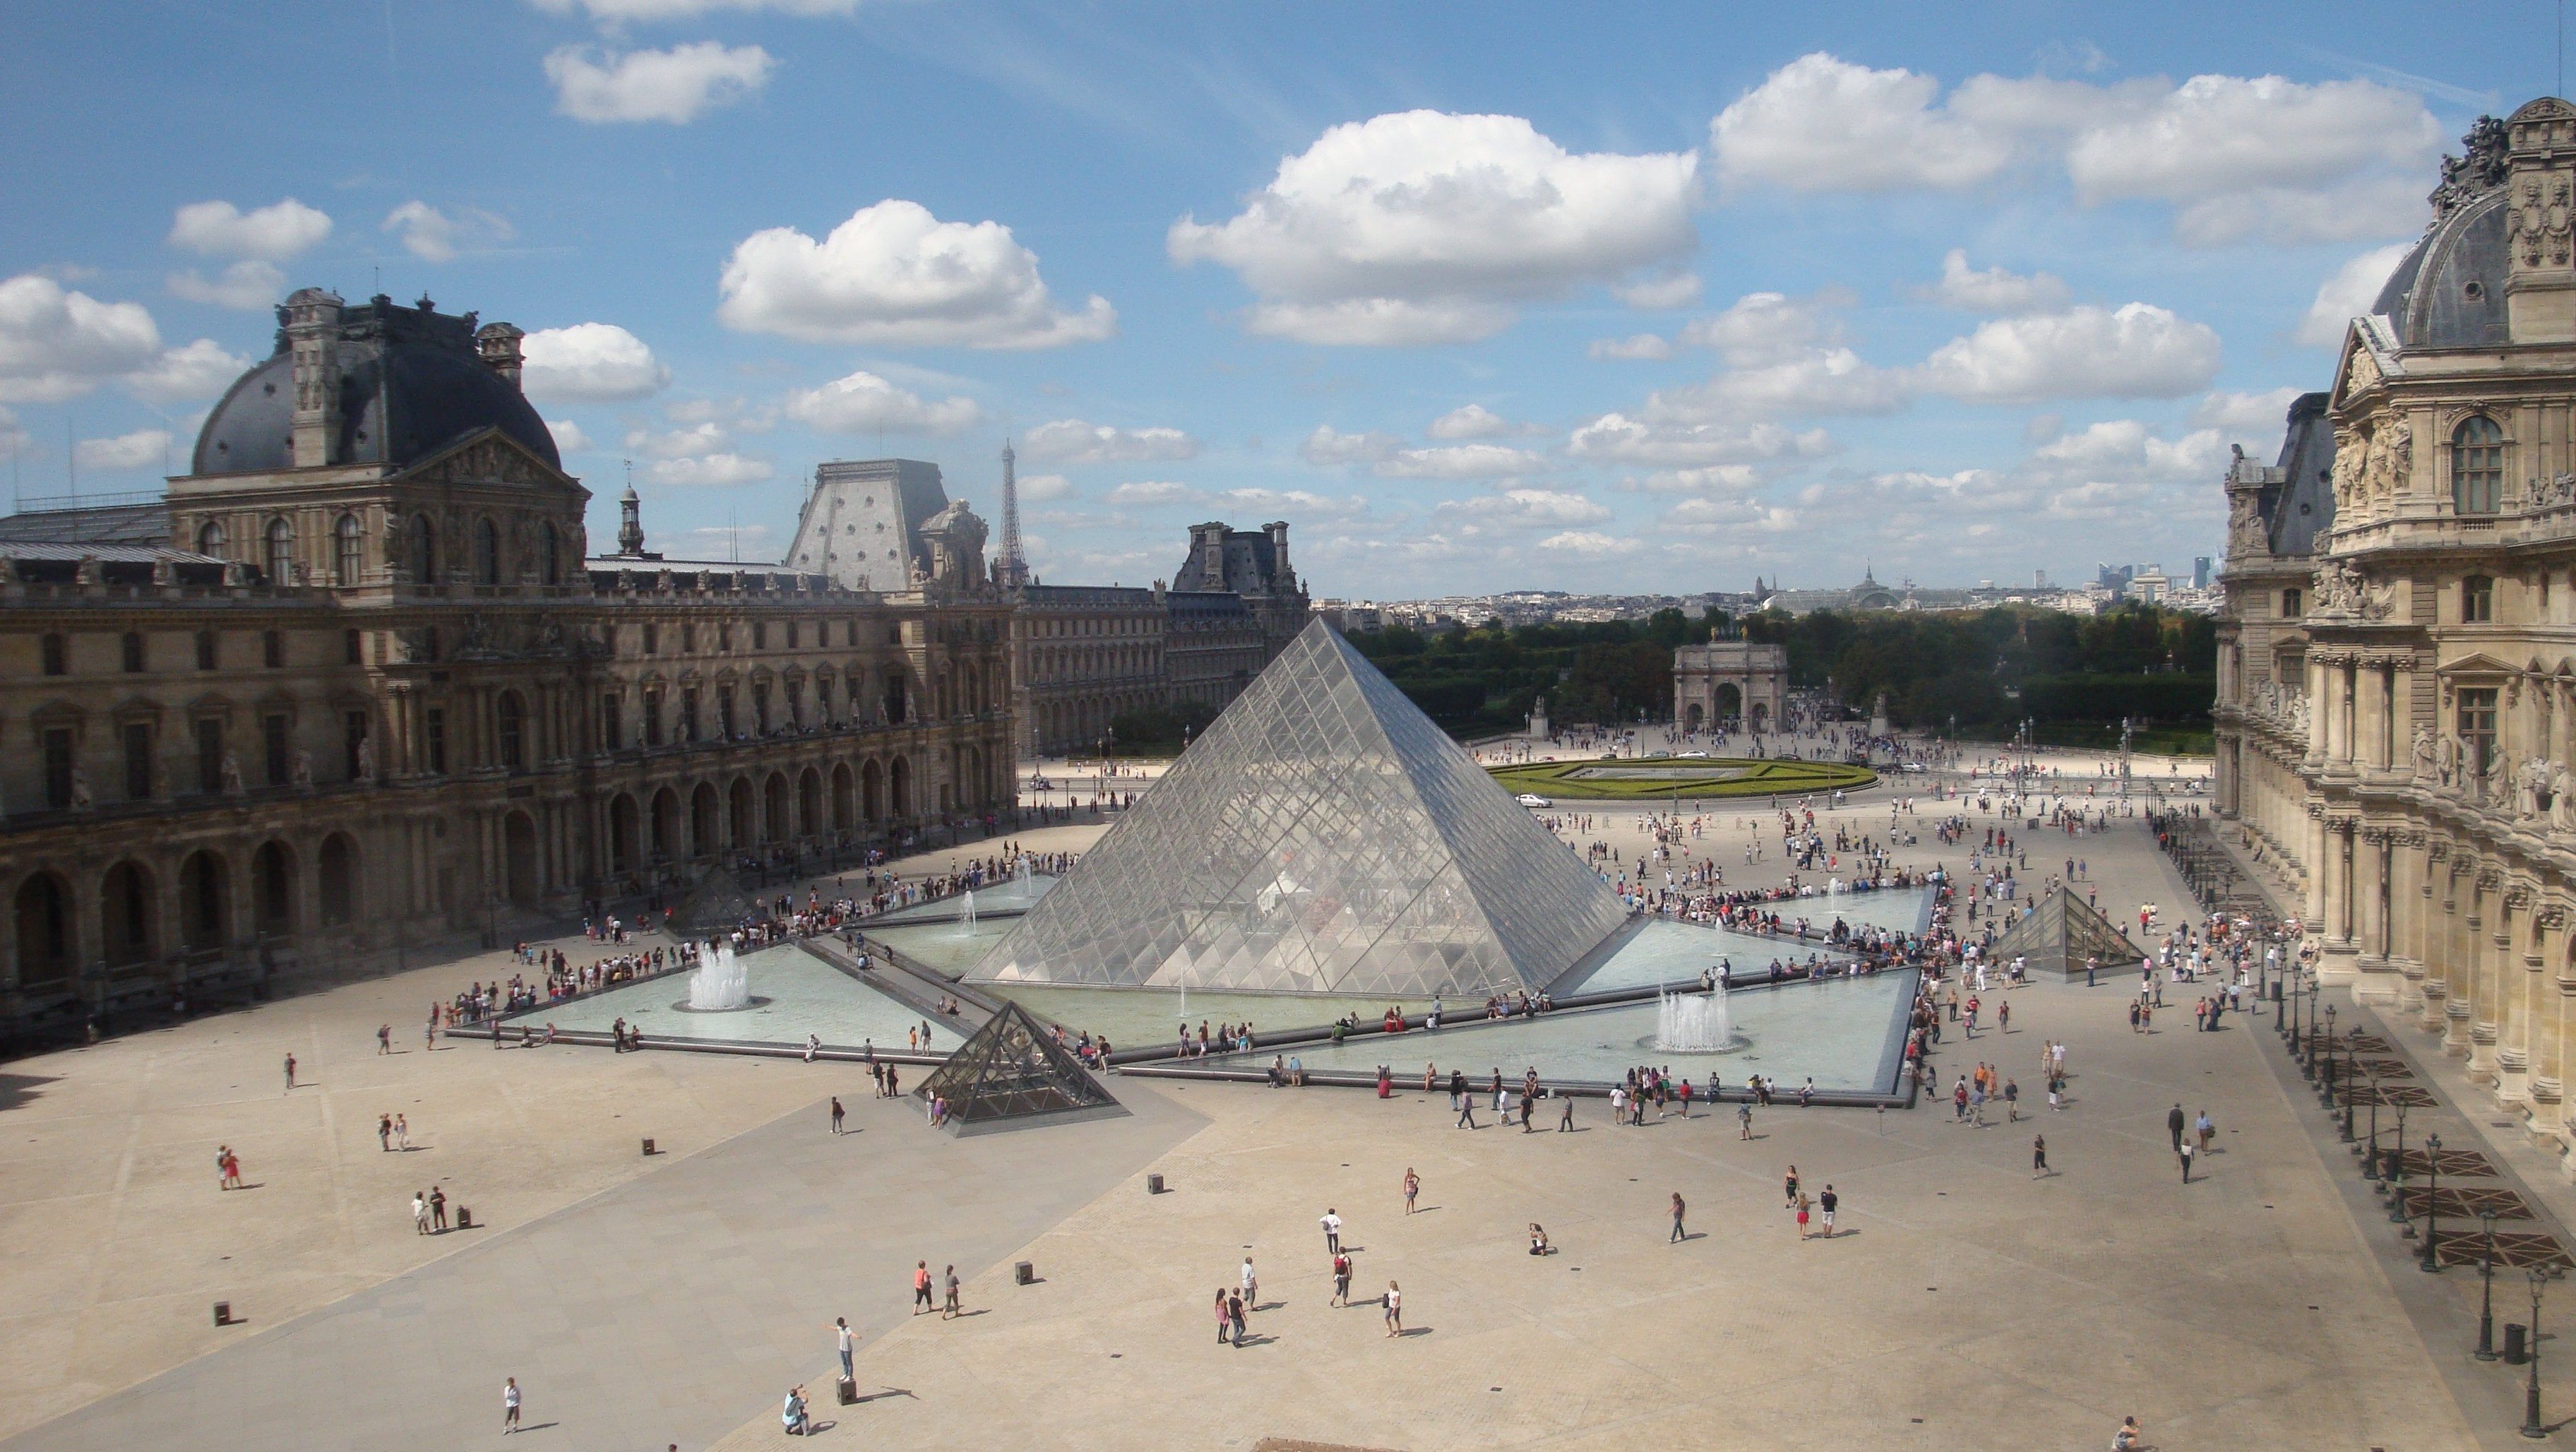 The Louvre museum, Paris. [1920x1080]